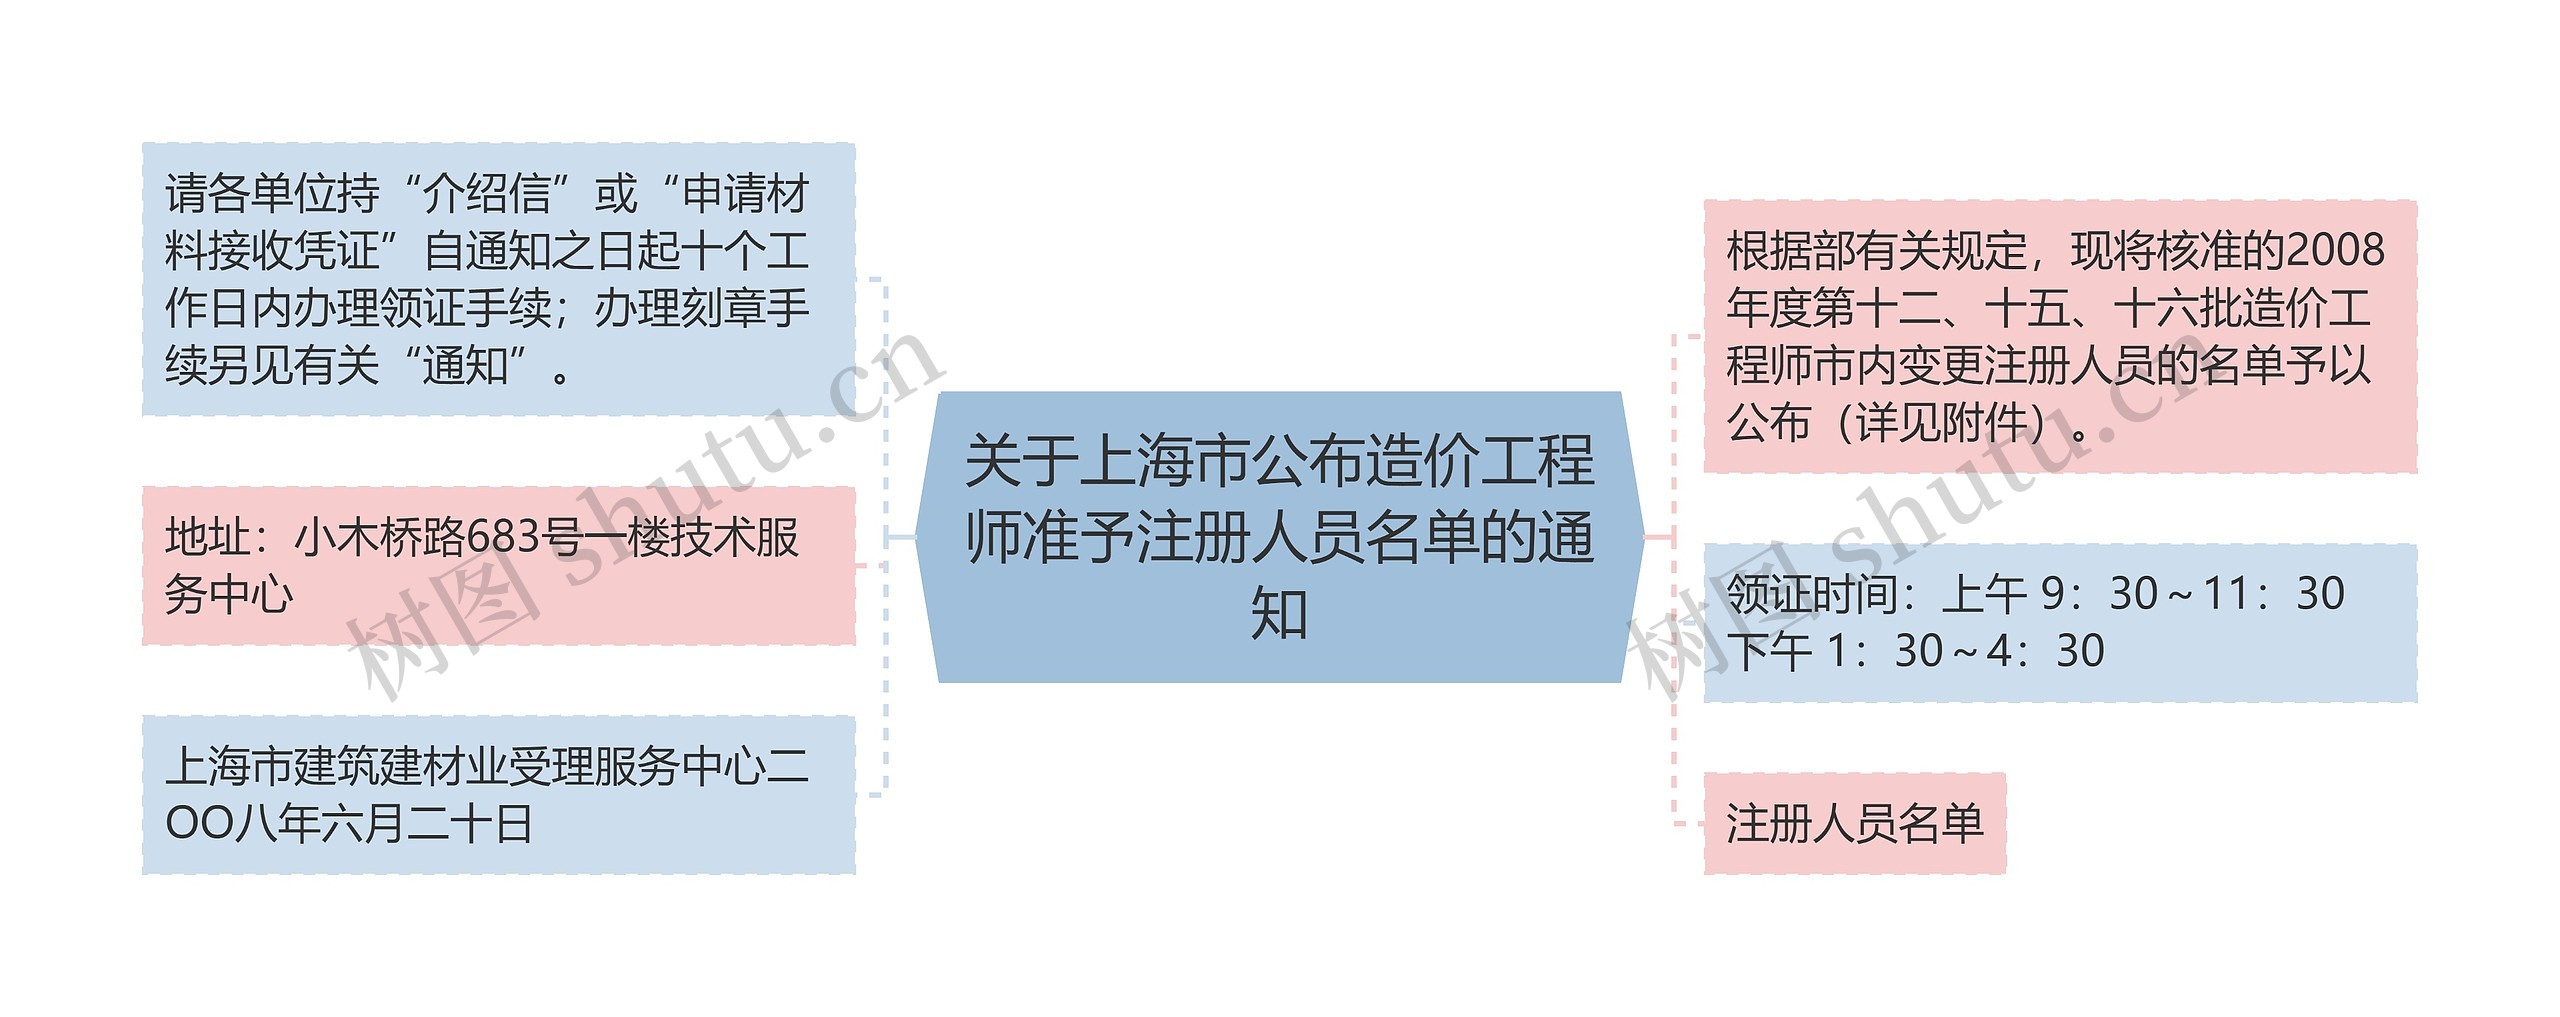 关于上海市公布造价工程师准予注册人员名单的通知思维导图